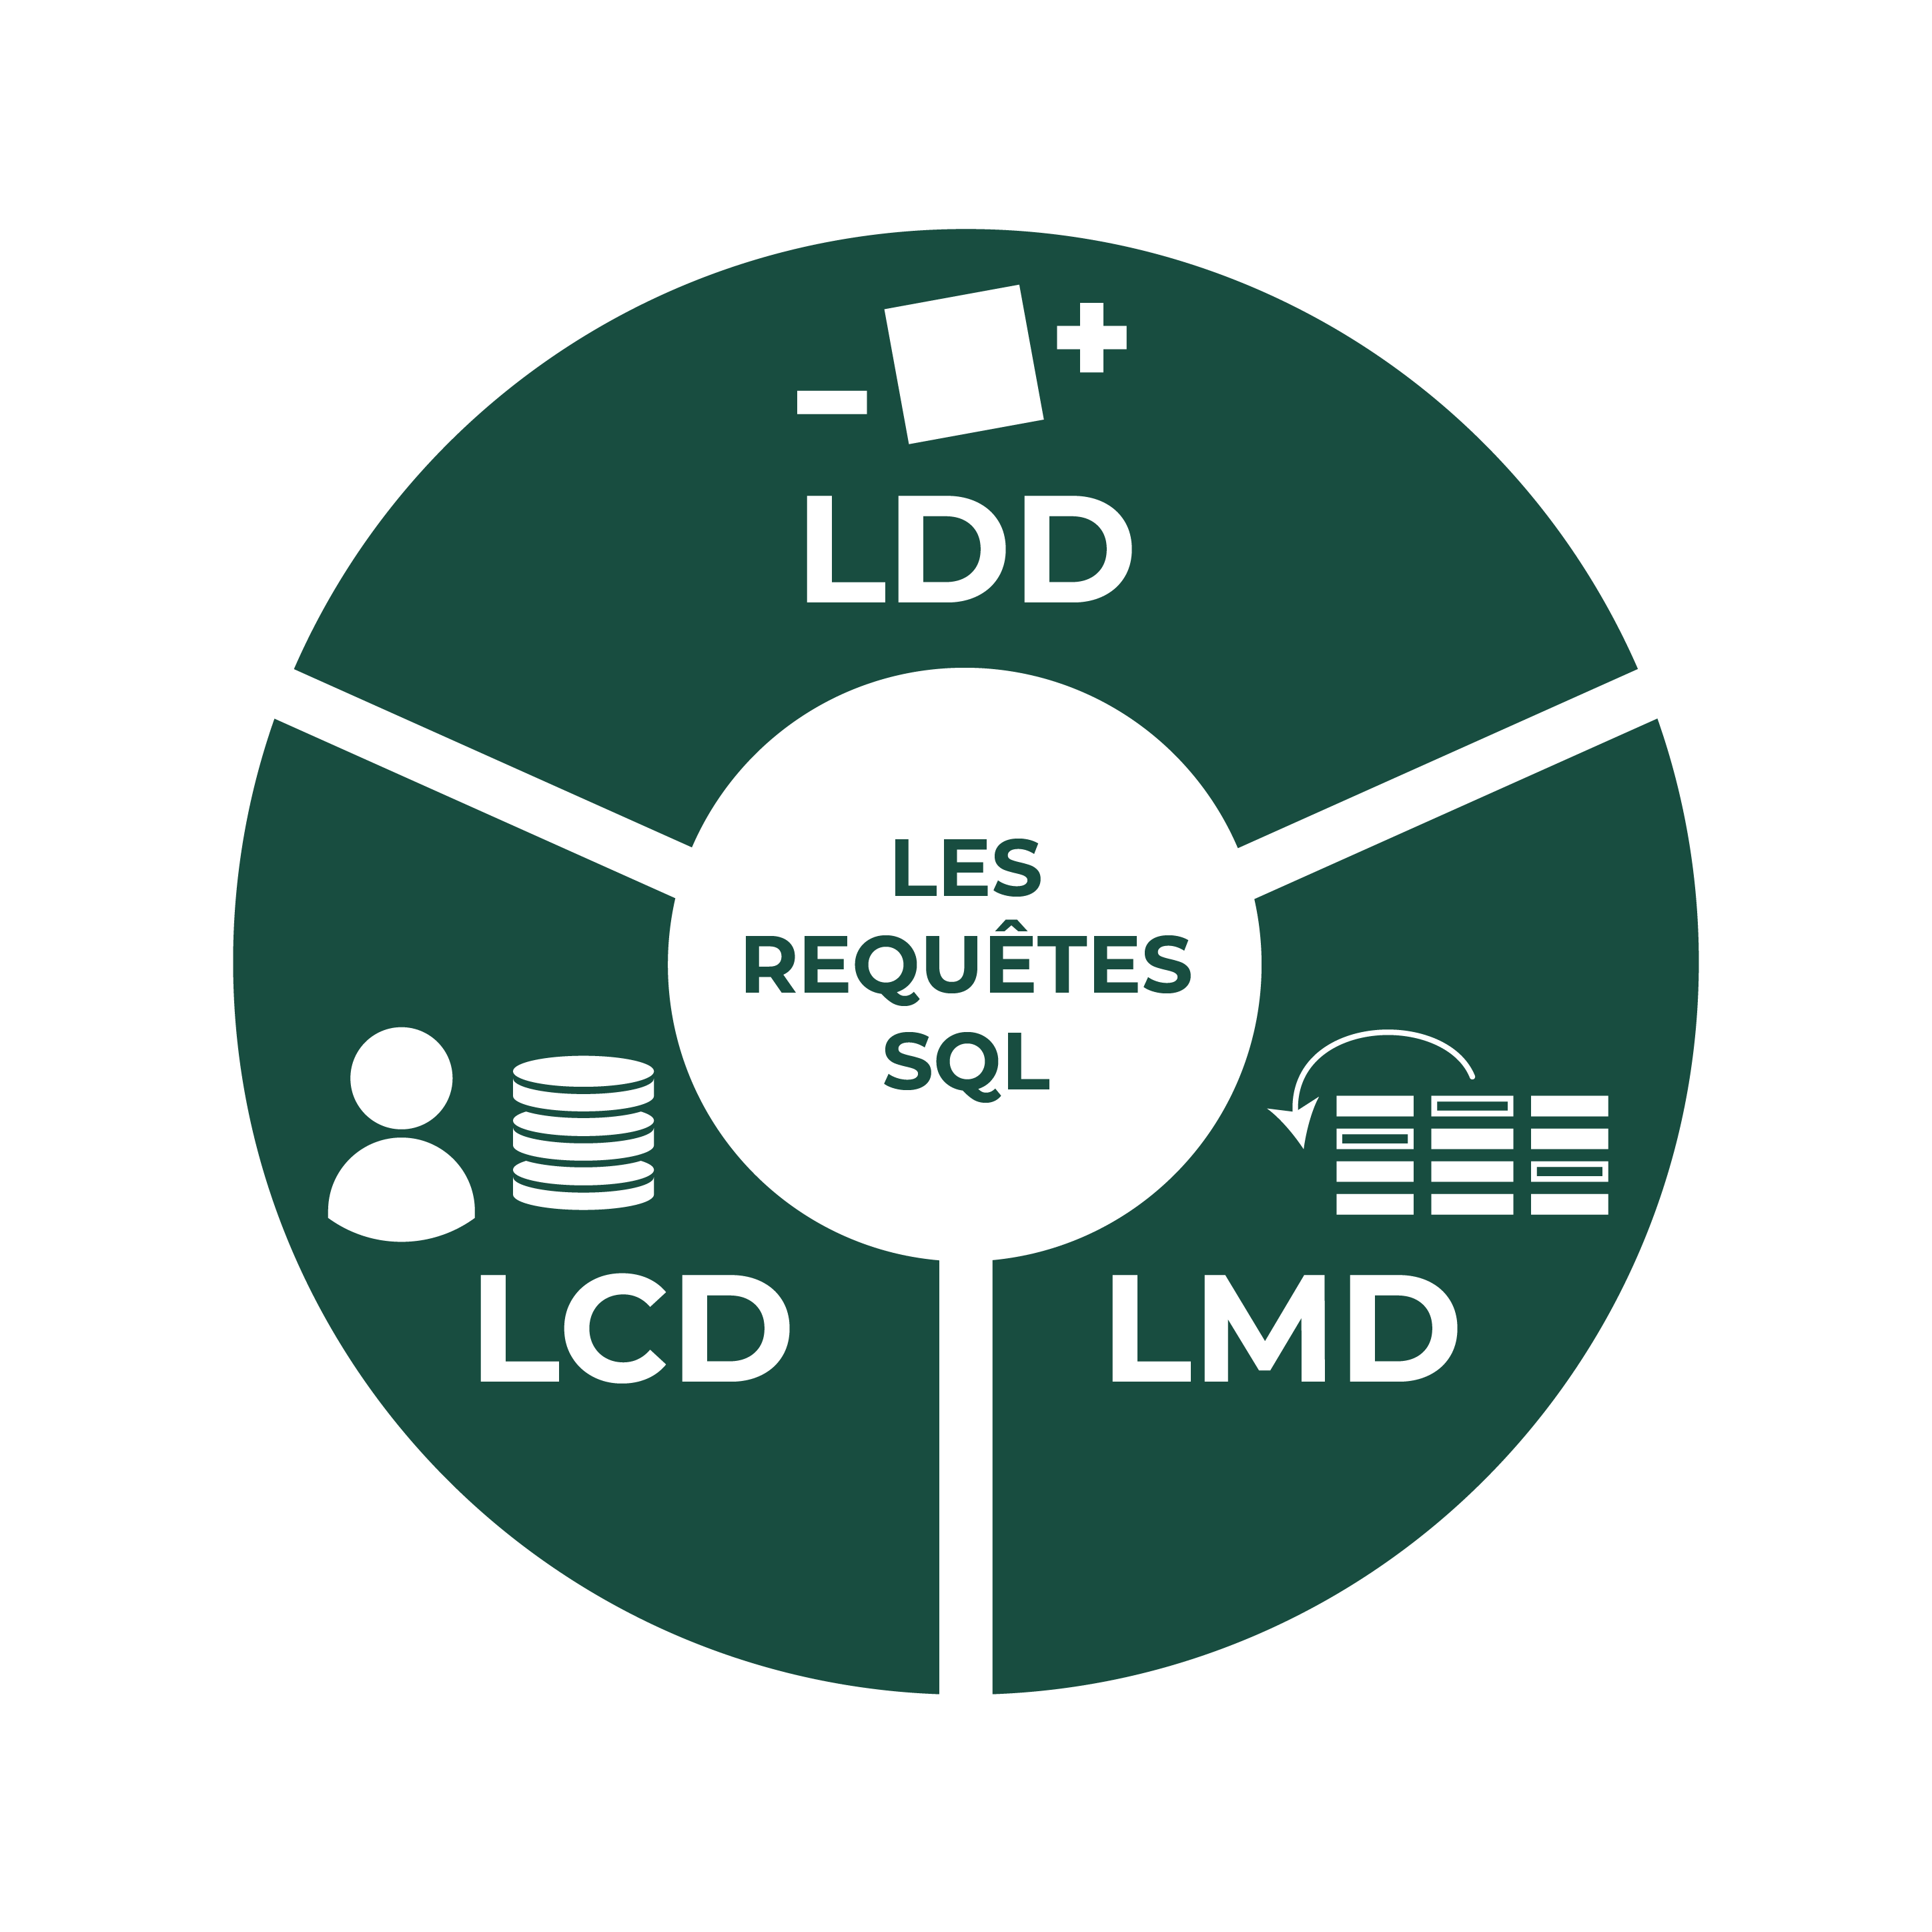 Les 3 types de requêtes SQL : - LDD pour langage de définition de données - LCD pour langage de contrôle de données - LMD pour langage de manipulation de données